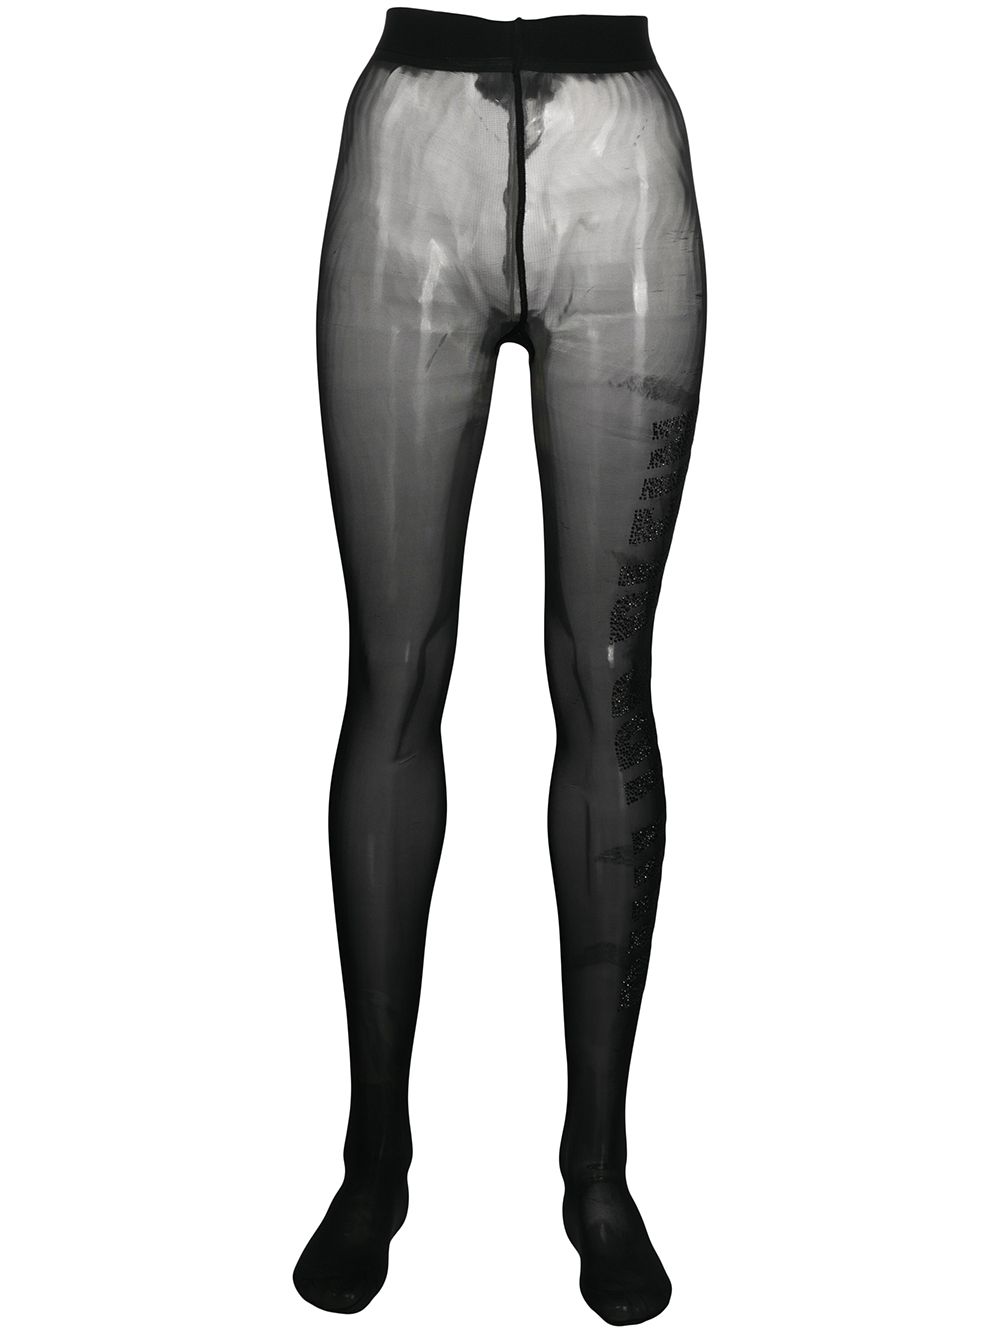 Philipp Plein gem-embellished tights - Black von Philipp Plein